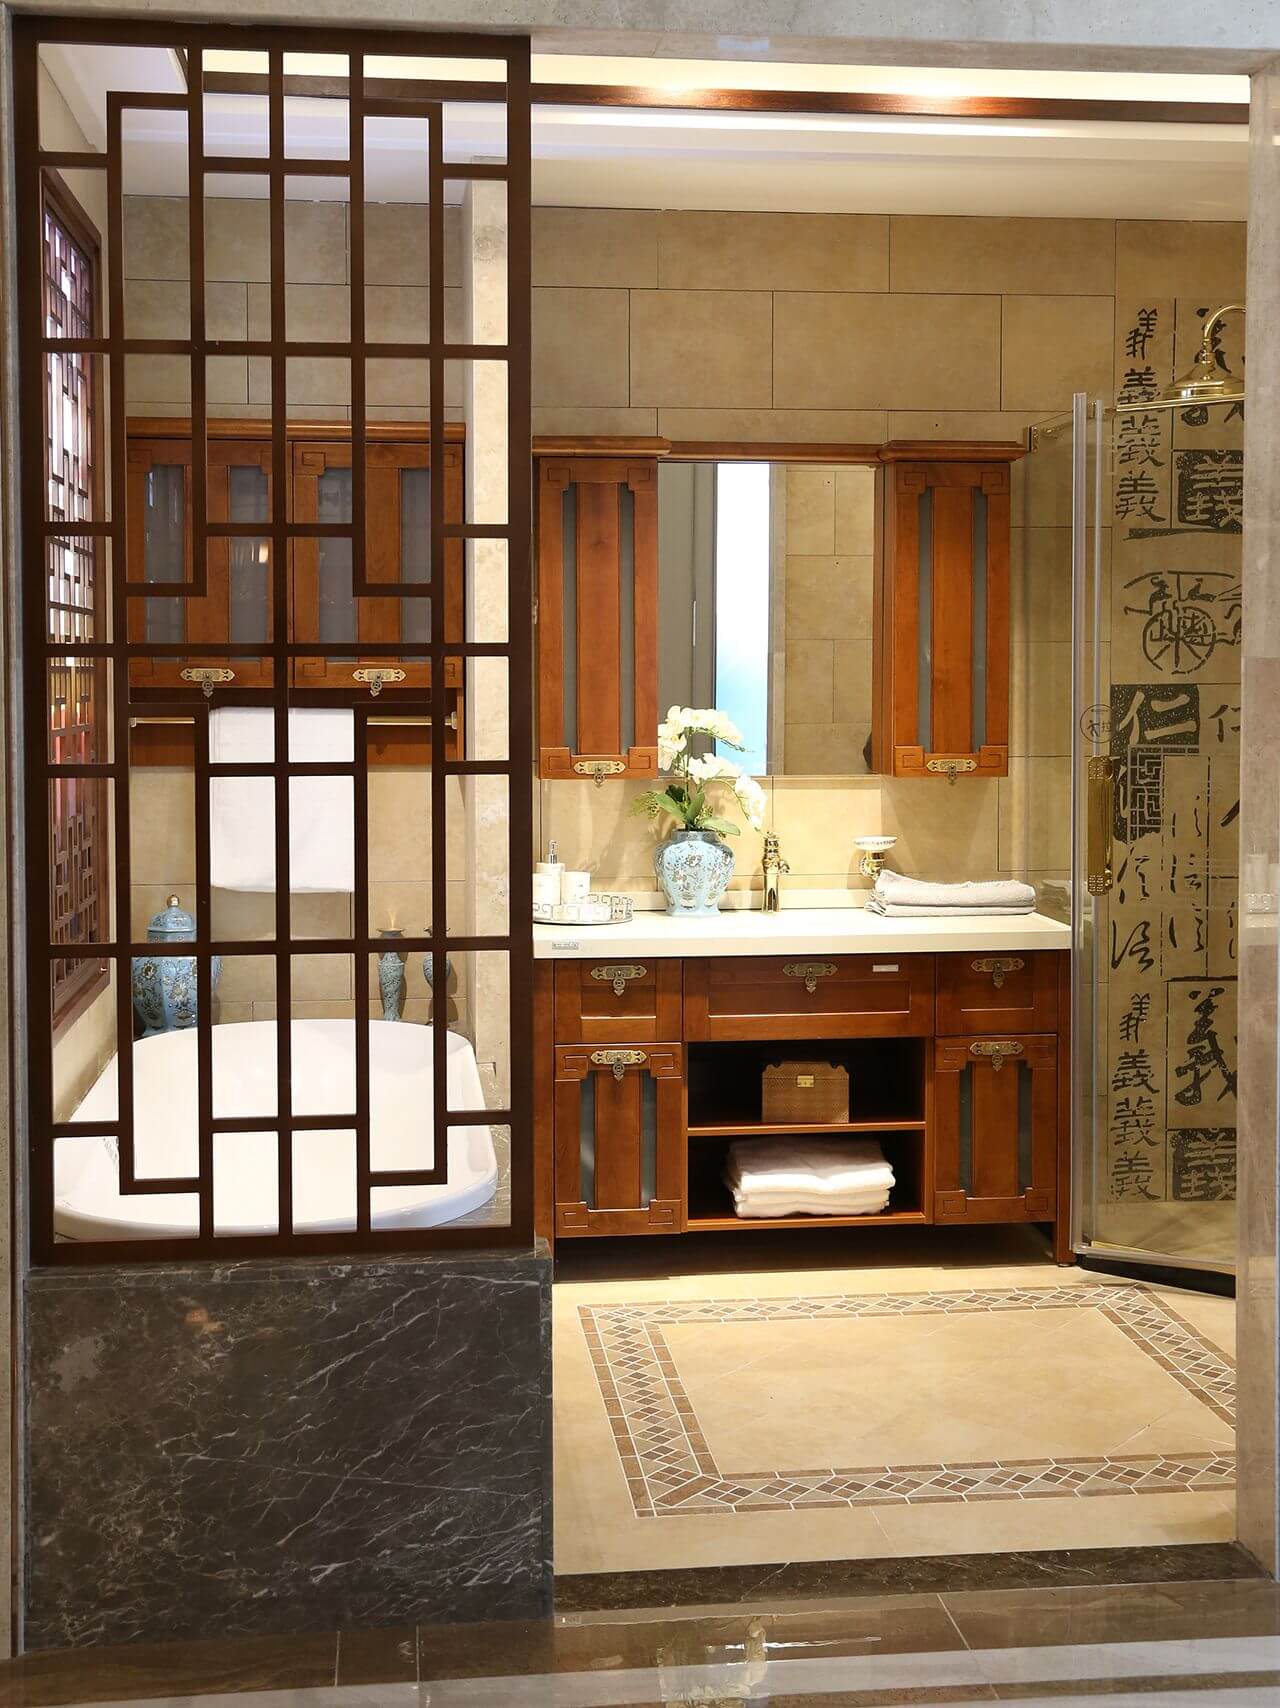 пленительная в китайском стиле ванная комната